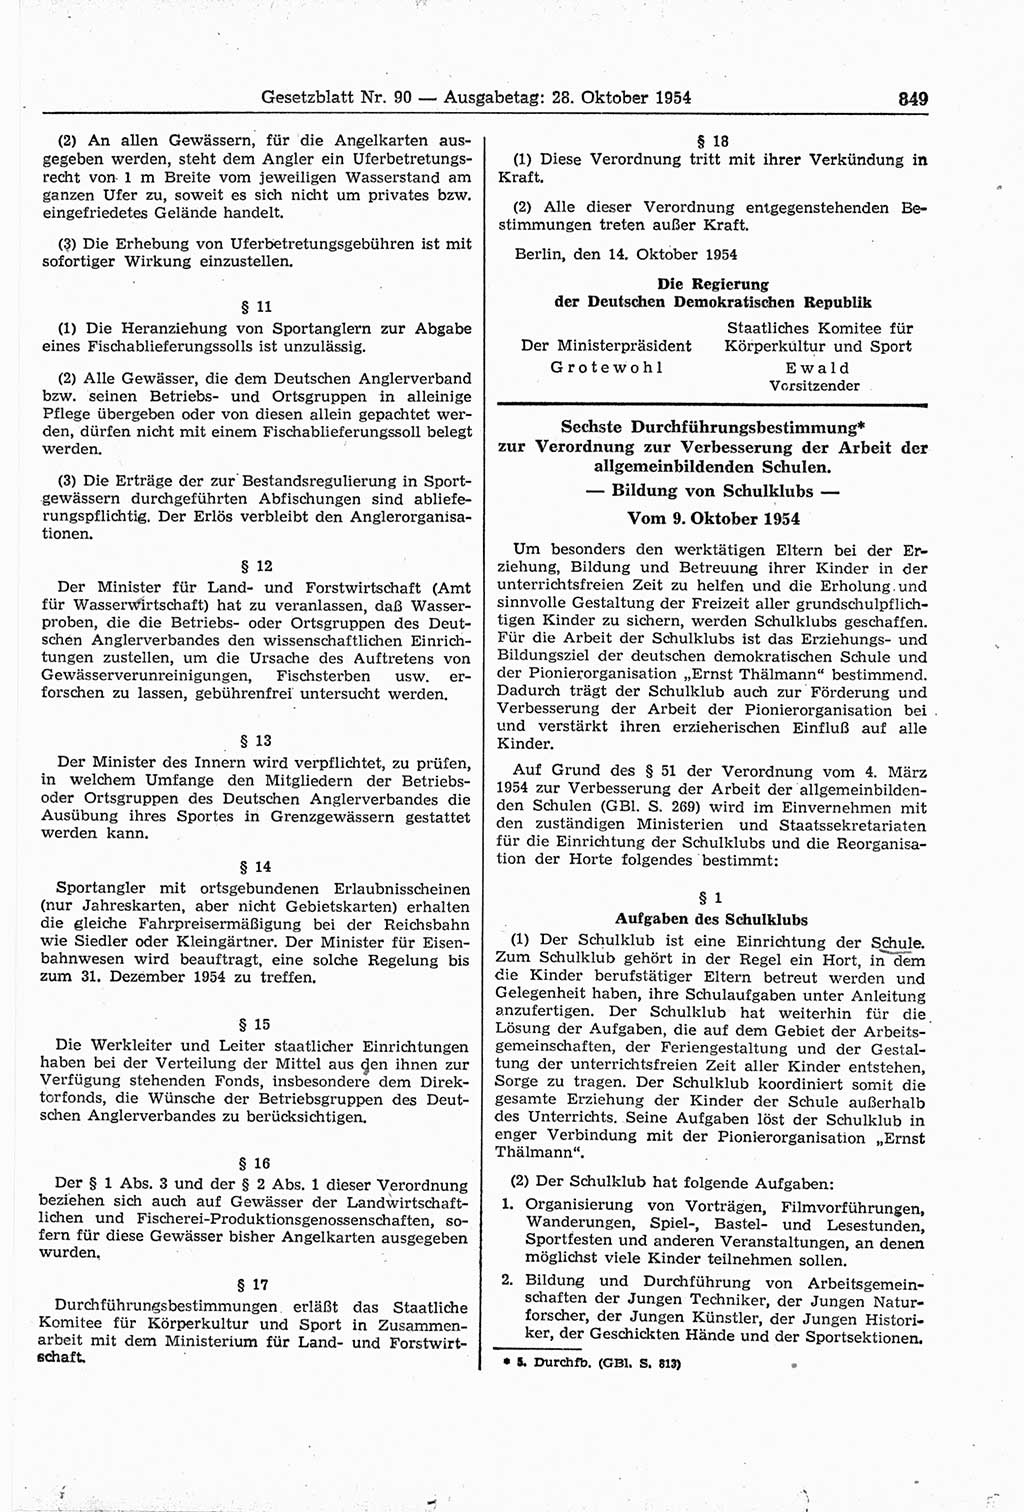 Gesetzblatt (GBl.) der Deutschen Demokratischen Republik (DDR) 1954, Seite 849 (GBl. DDR 1954, S. 849)